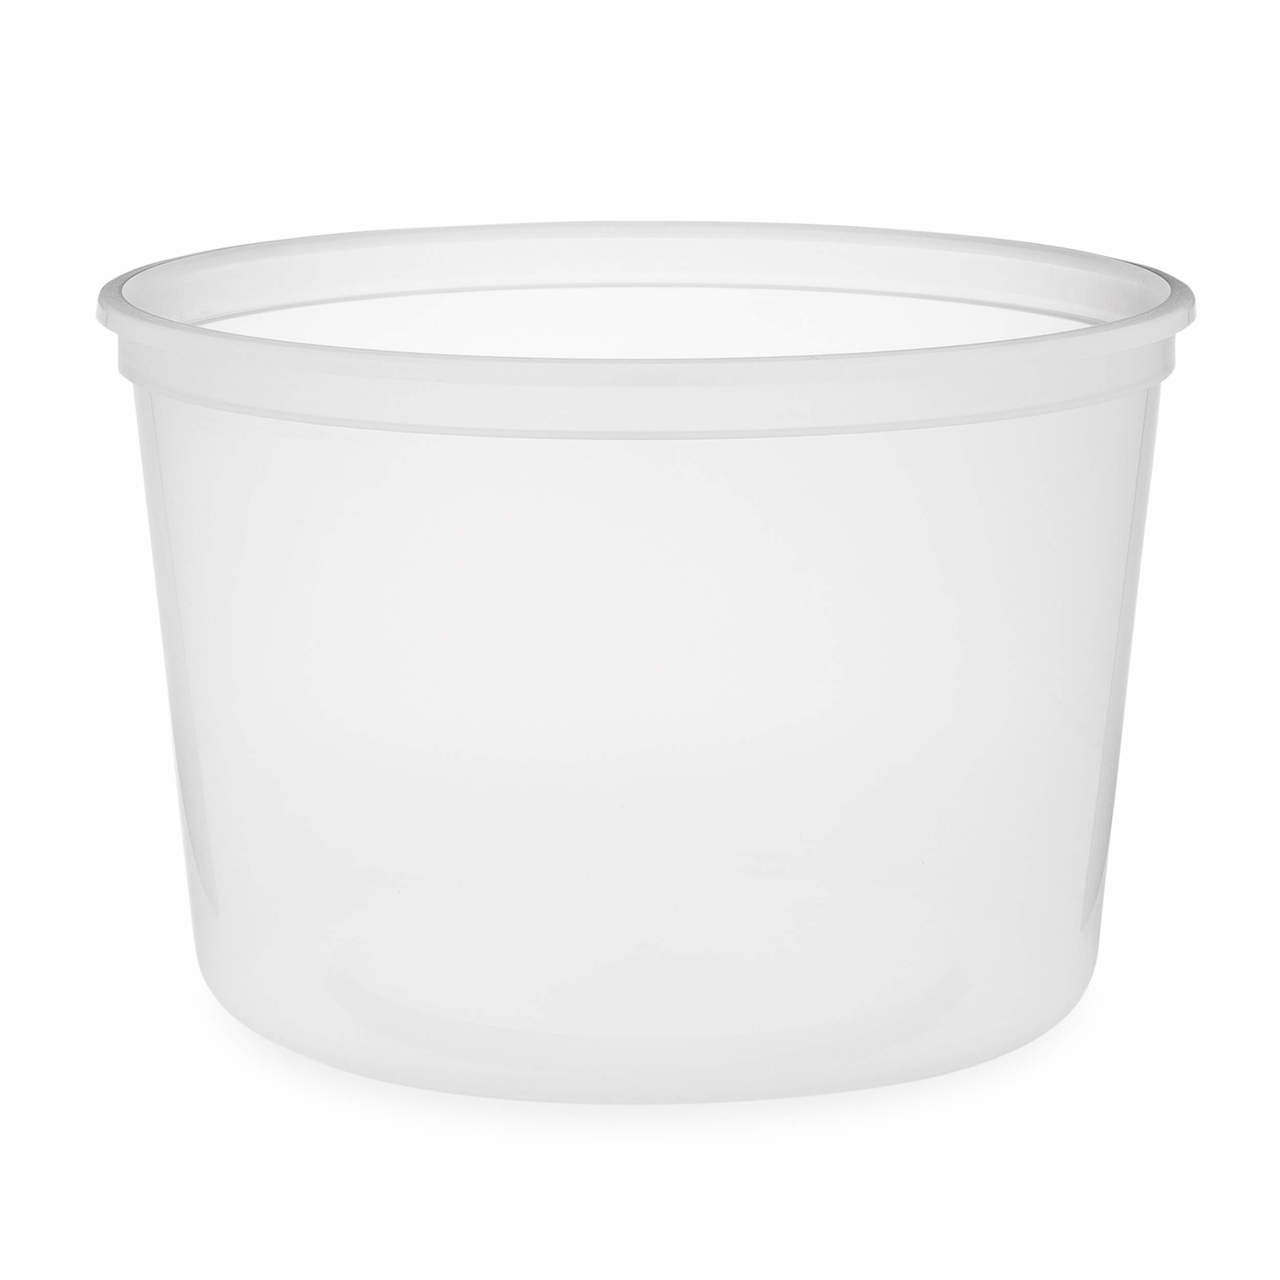 64oz Clear deli tub
container, 120/case